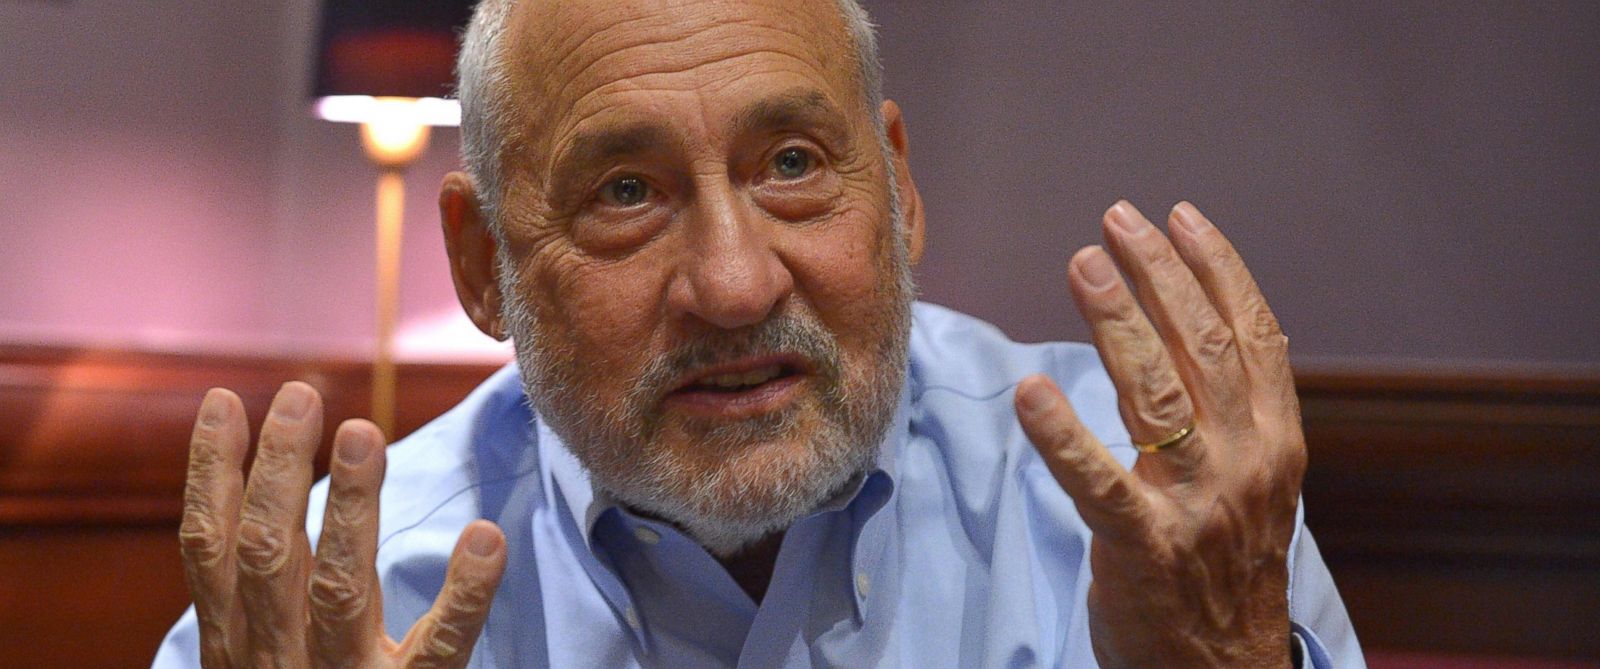 “O fenômeno da direita é reflexo da desigualdade criada pelo centro” – Joseph Stiglitz